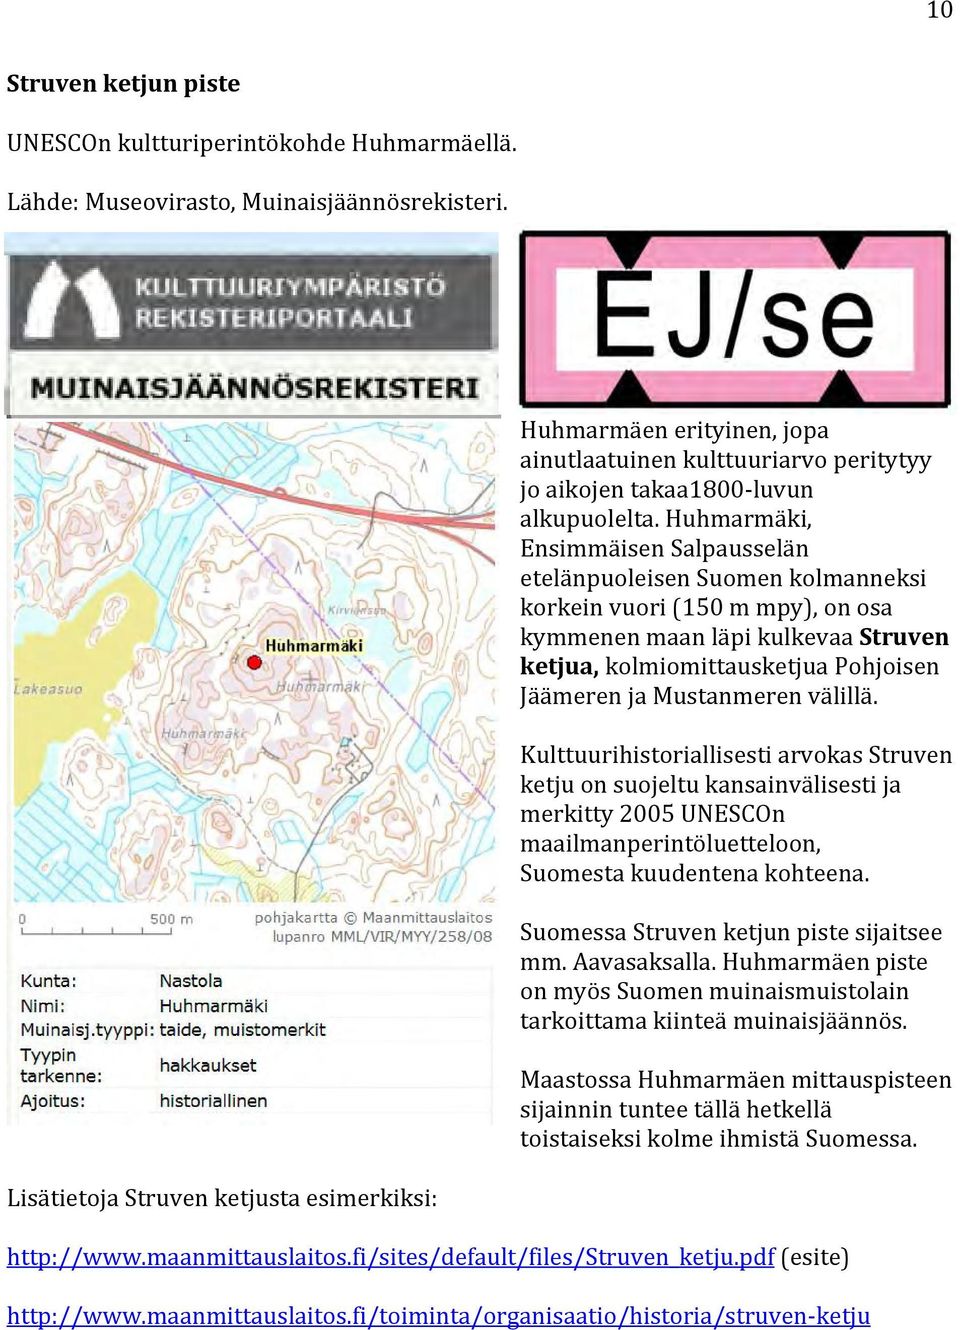 Huhmarmäki, Ensimmäisen Salpausselän etelänpuoleisen Suomen kolmanneksi korkein vuori (150 m mpy), on osa kymmenen maan läpi kulkevaa Struven ketjua, kolmiomittausketjua Pohjoisen Jäämeren ja